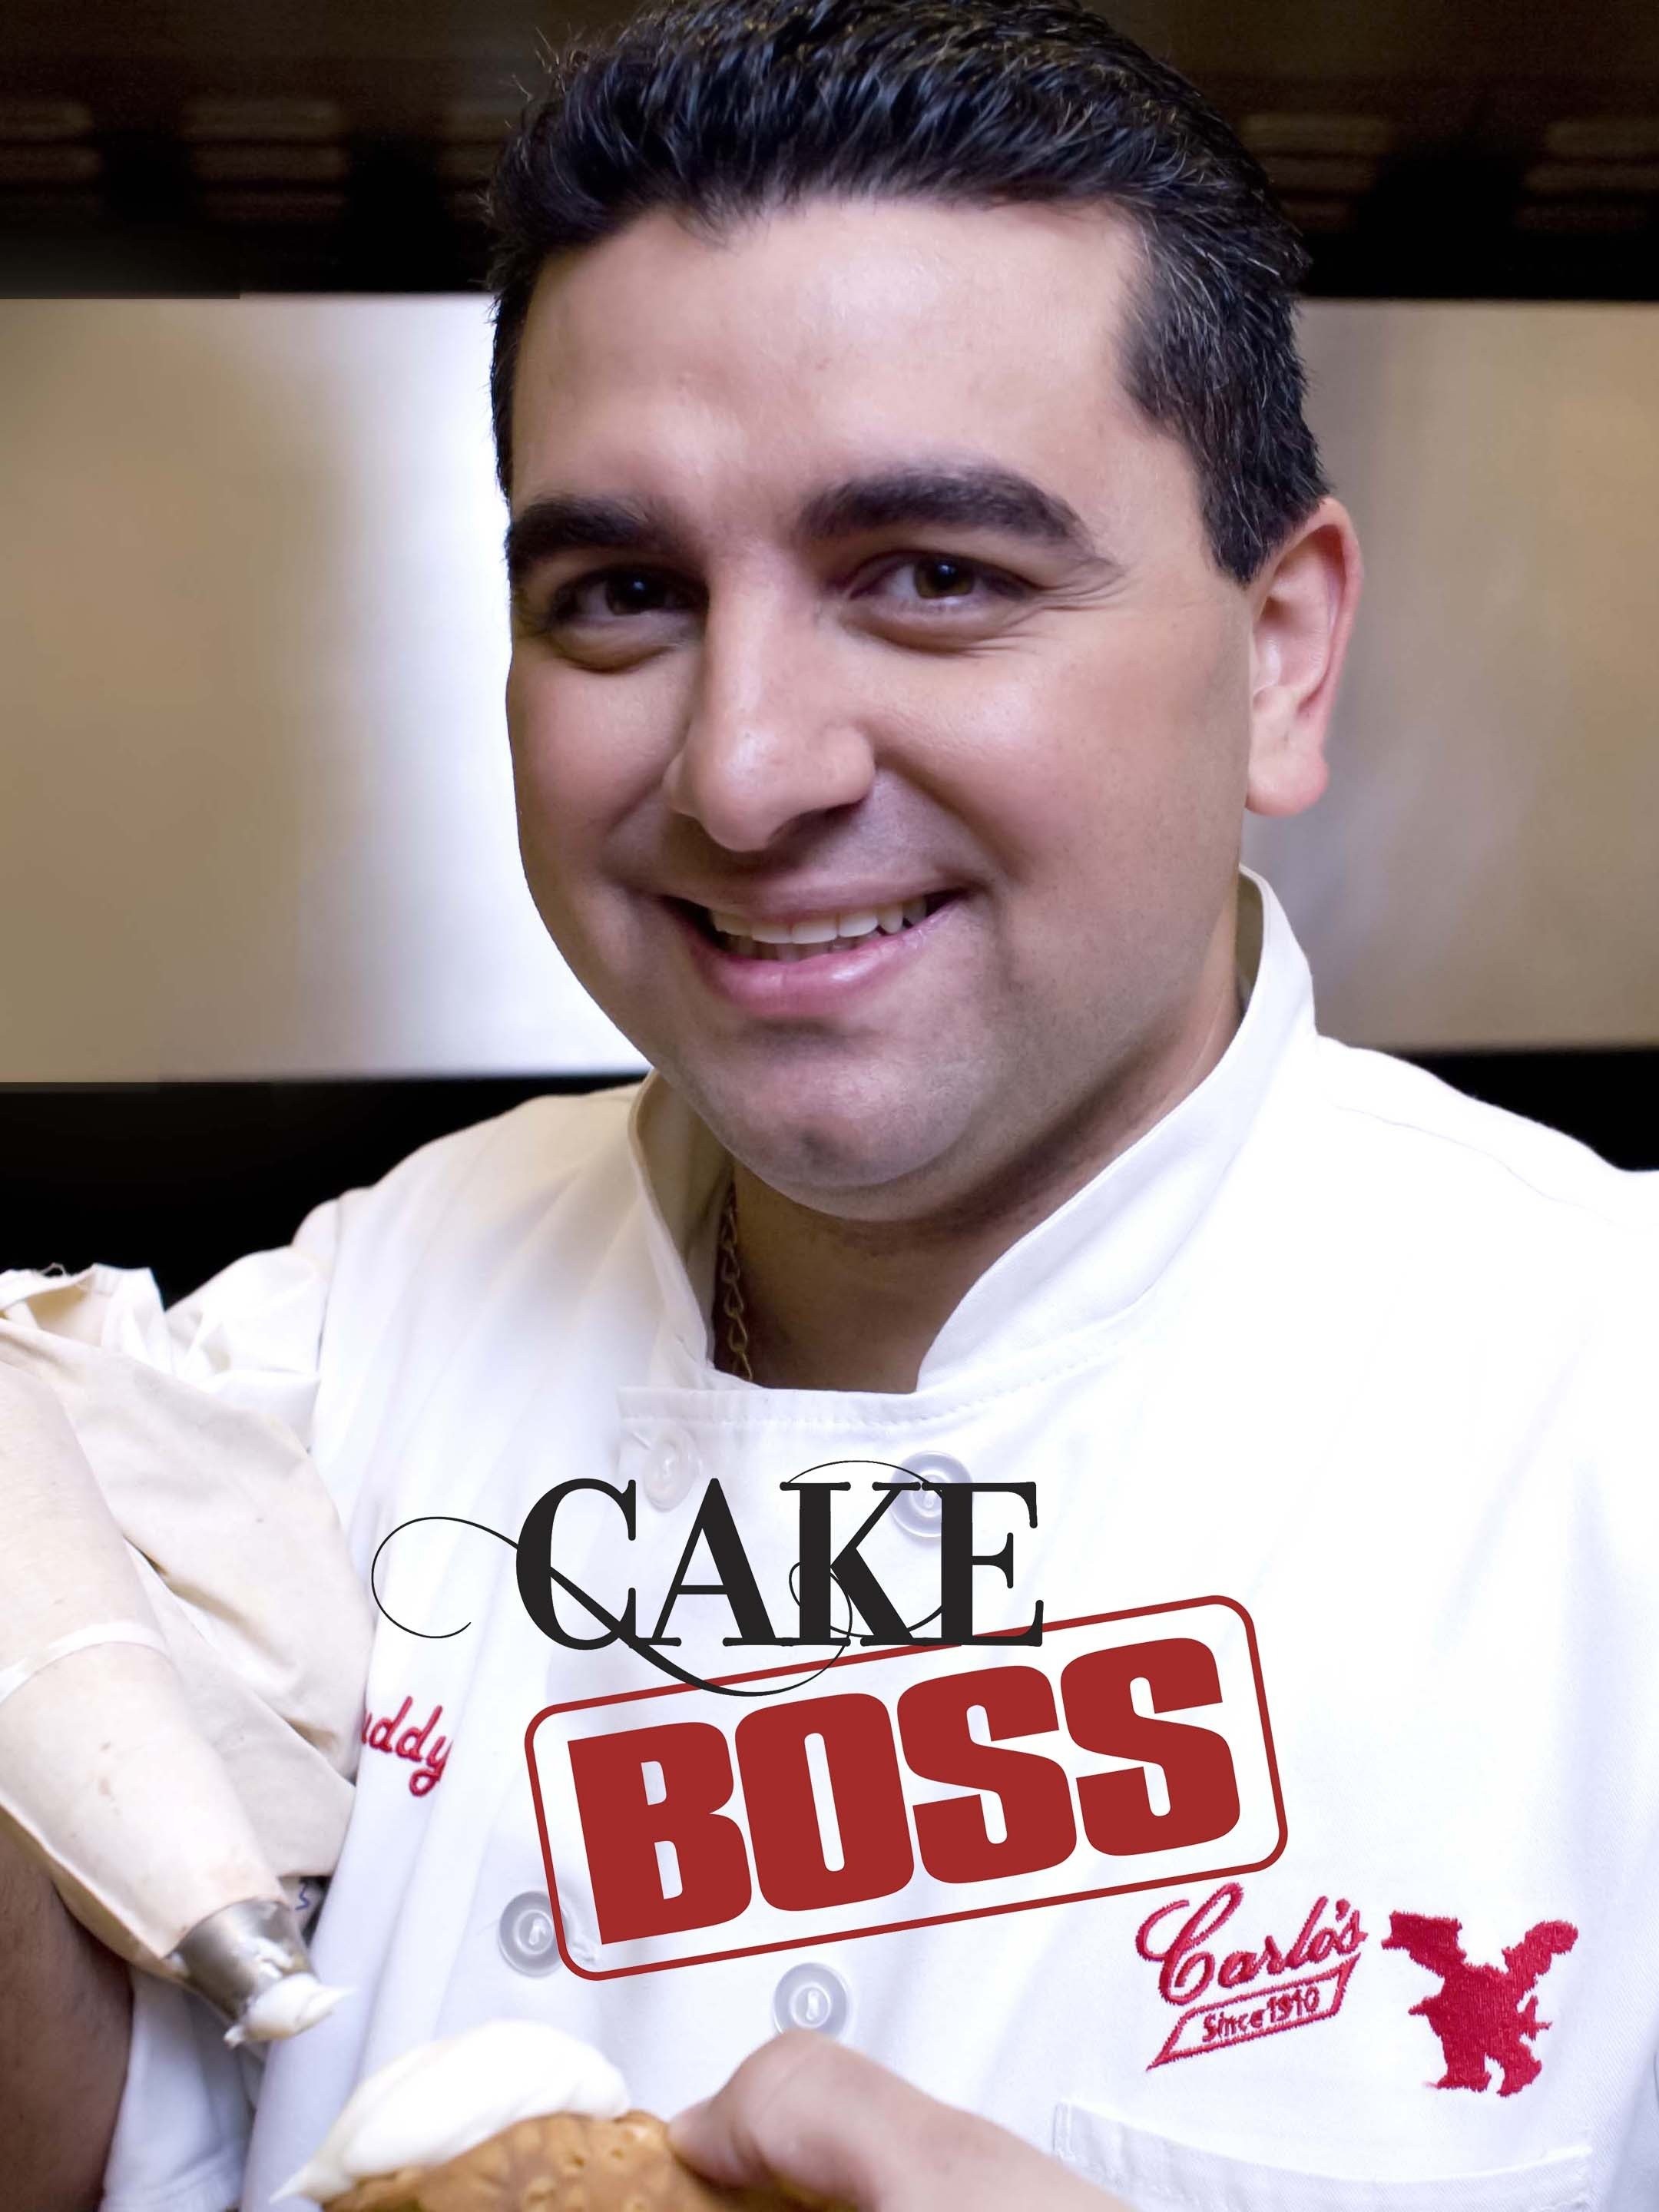 Cake Boss' Buddy Valastro's 2 New Shows! | 9news.com